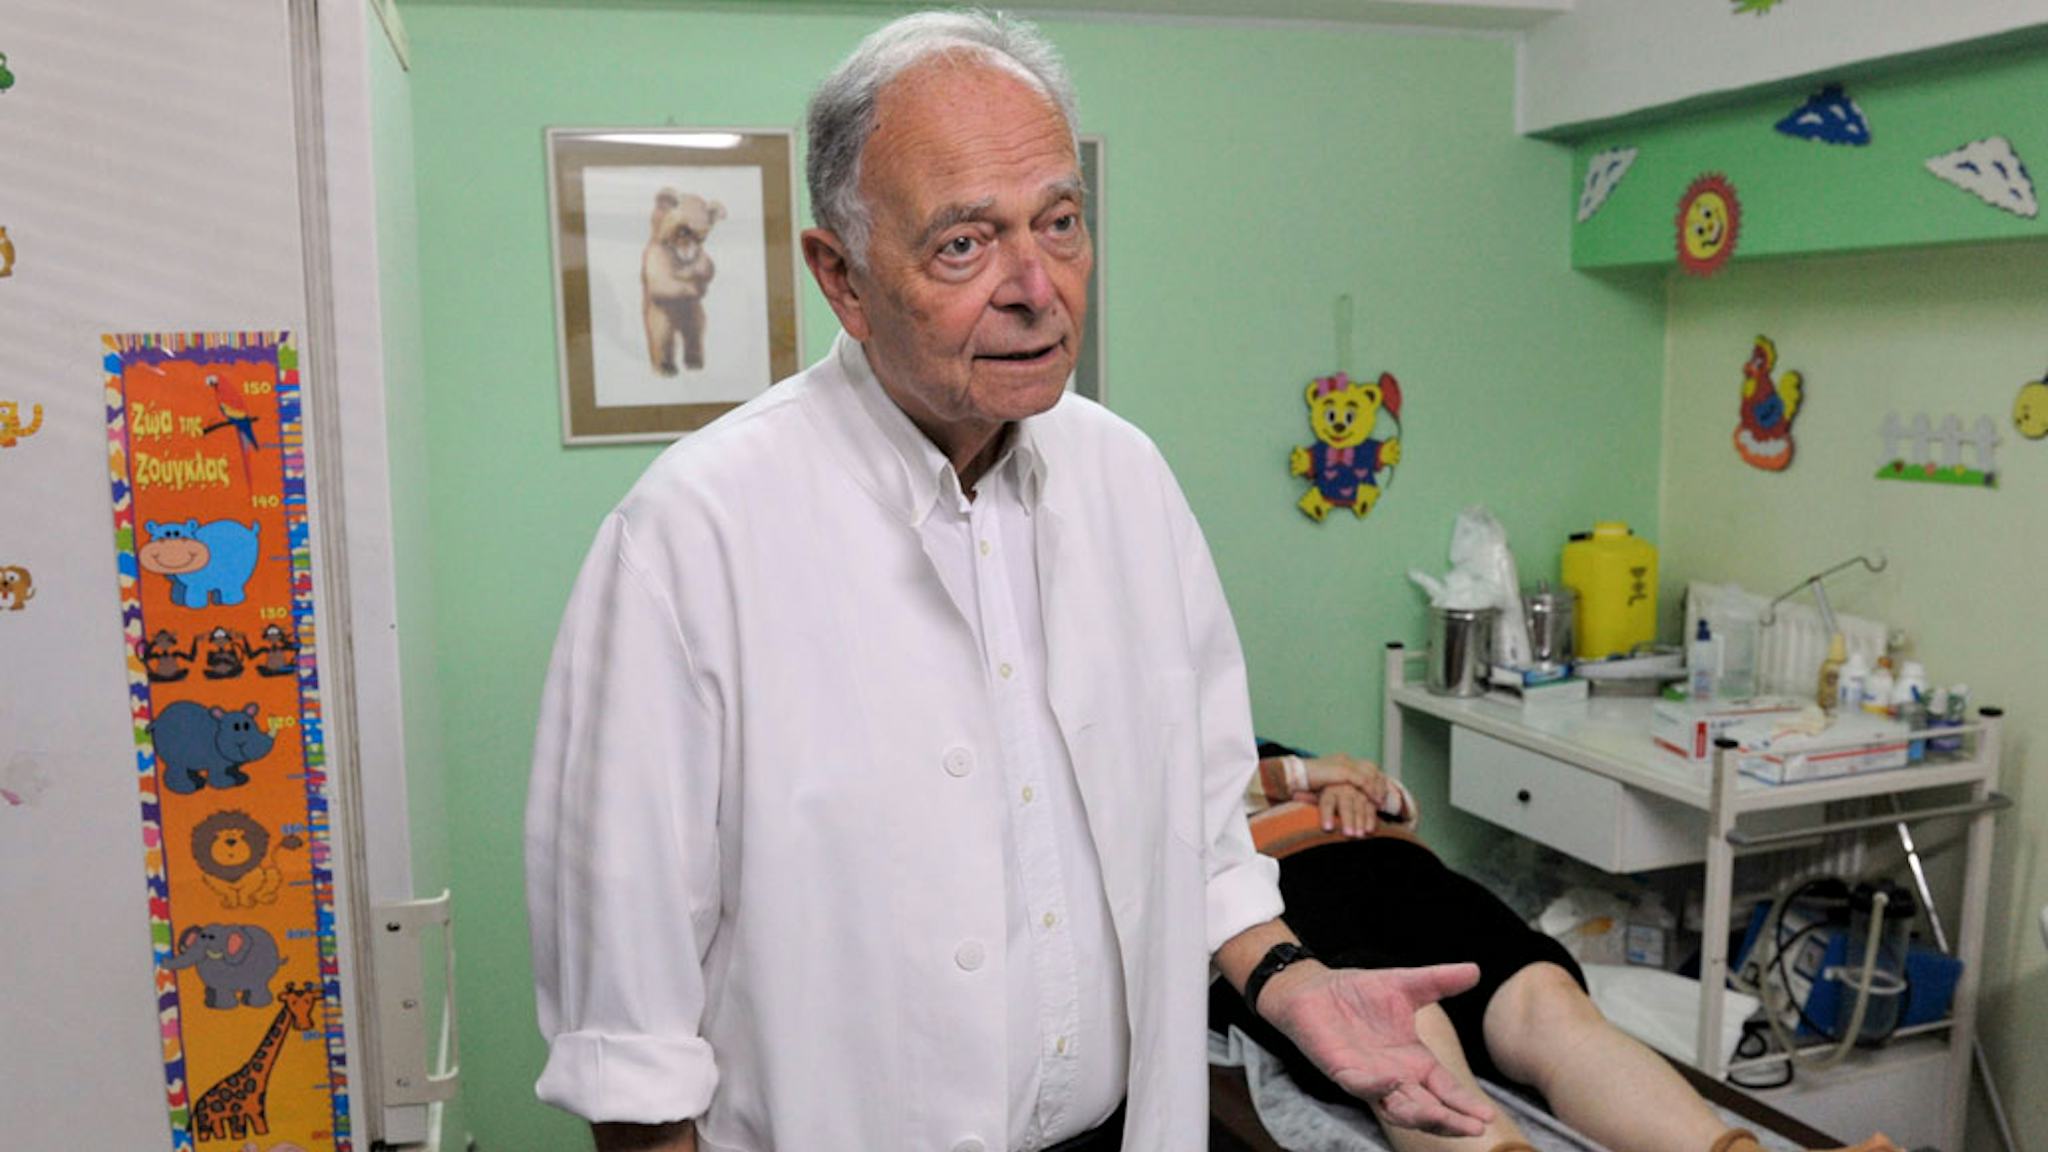 George Nikolakakis är pensionerad läkare men arbetar på Läkare i Världens mottagning flera dagar i veckan. Kvinnan på britsen bakom honom lider av artros. Patienterna är allt värre däran när de kommer till mottagningen, konstaterar han.